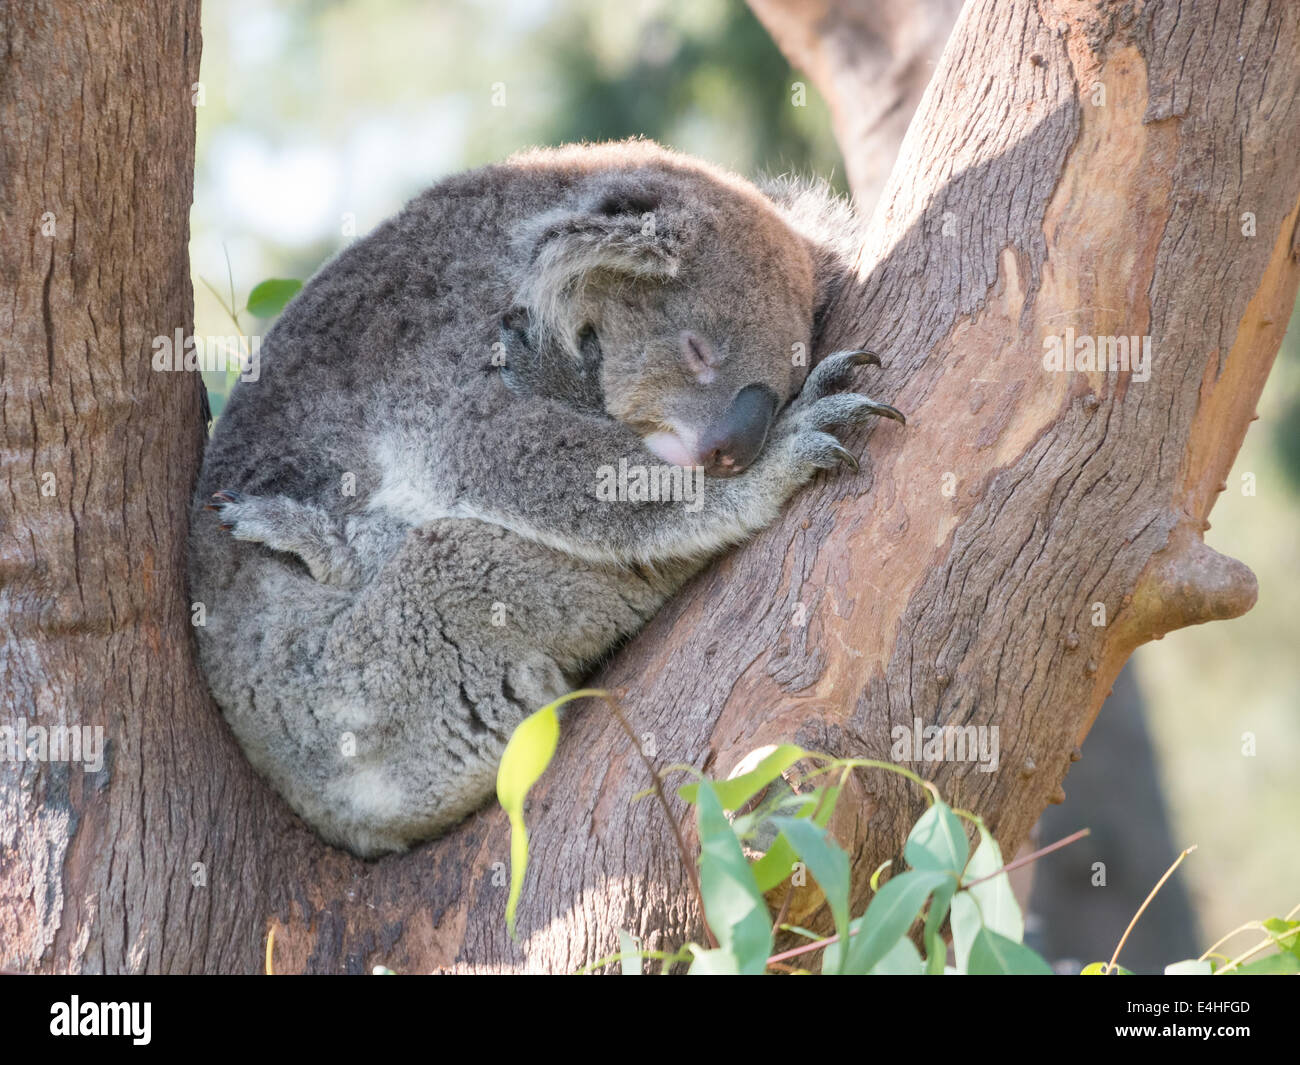 Koala bear sleeping in the tree branches Stock Photo